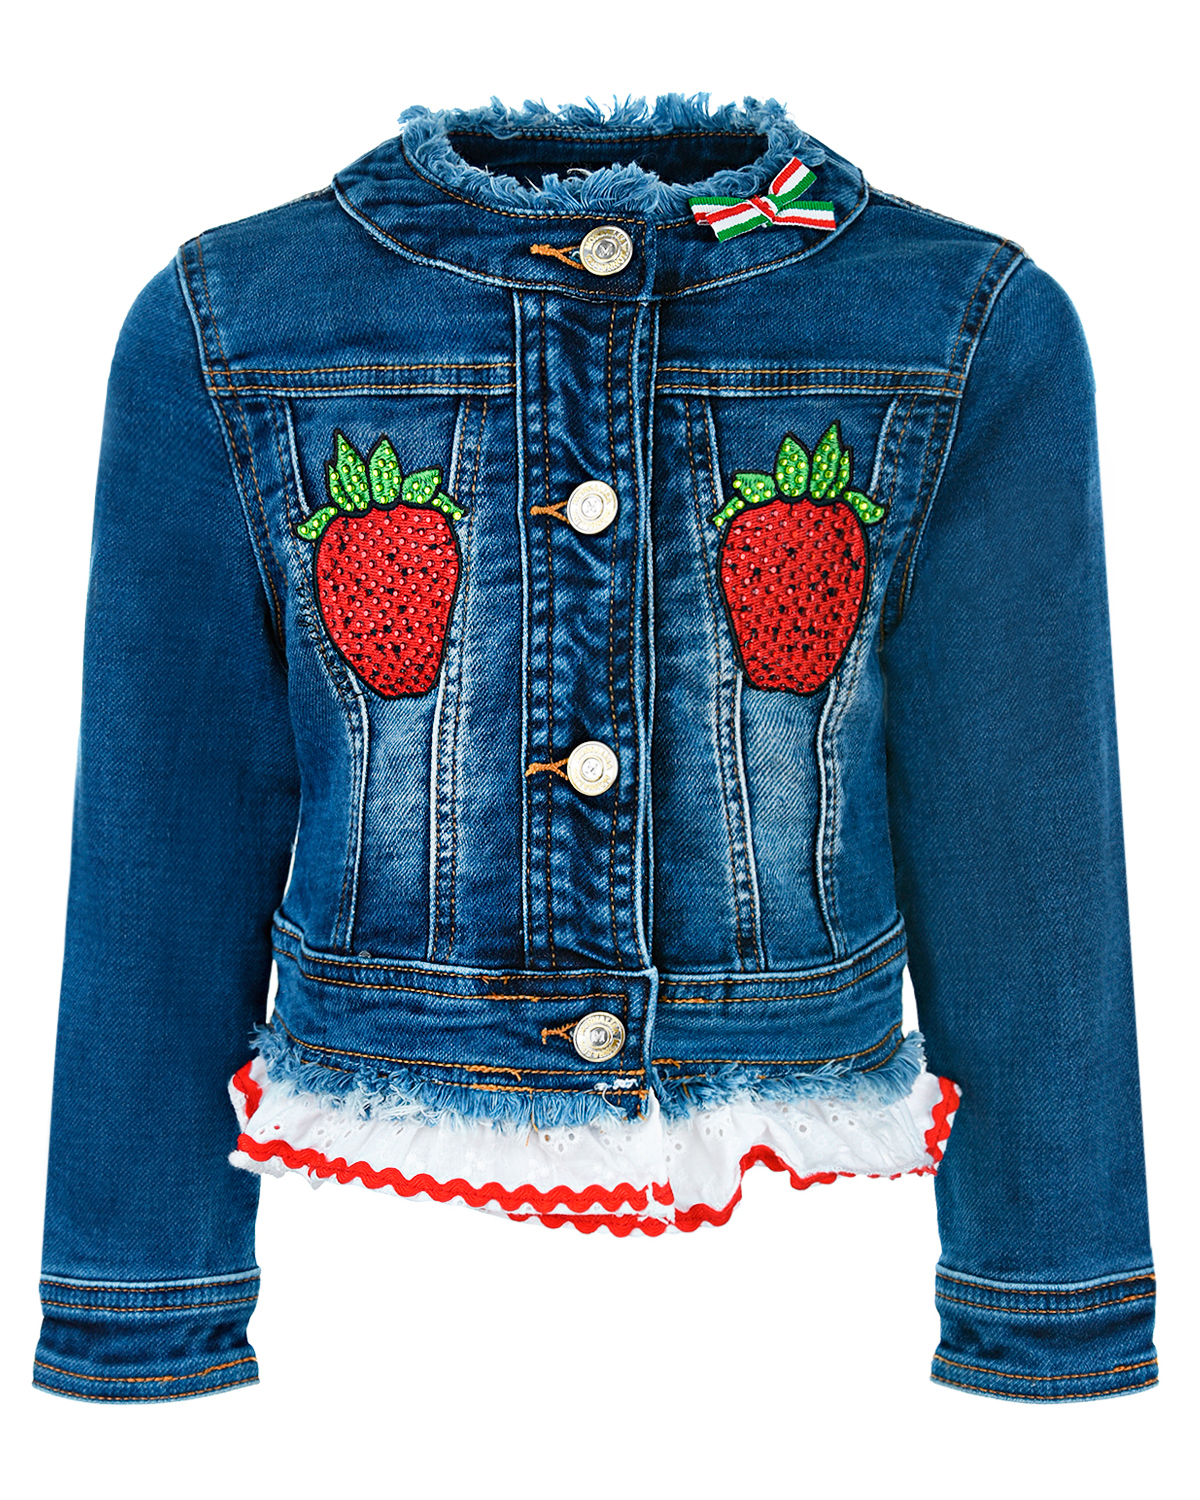 Джинсовая куртка с декором "Клубника" Monnalisa детская, размер 110, цвет синий